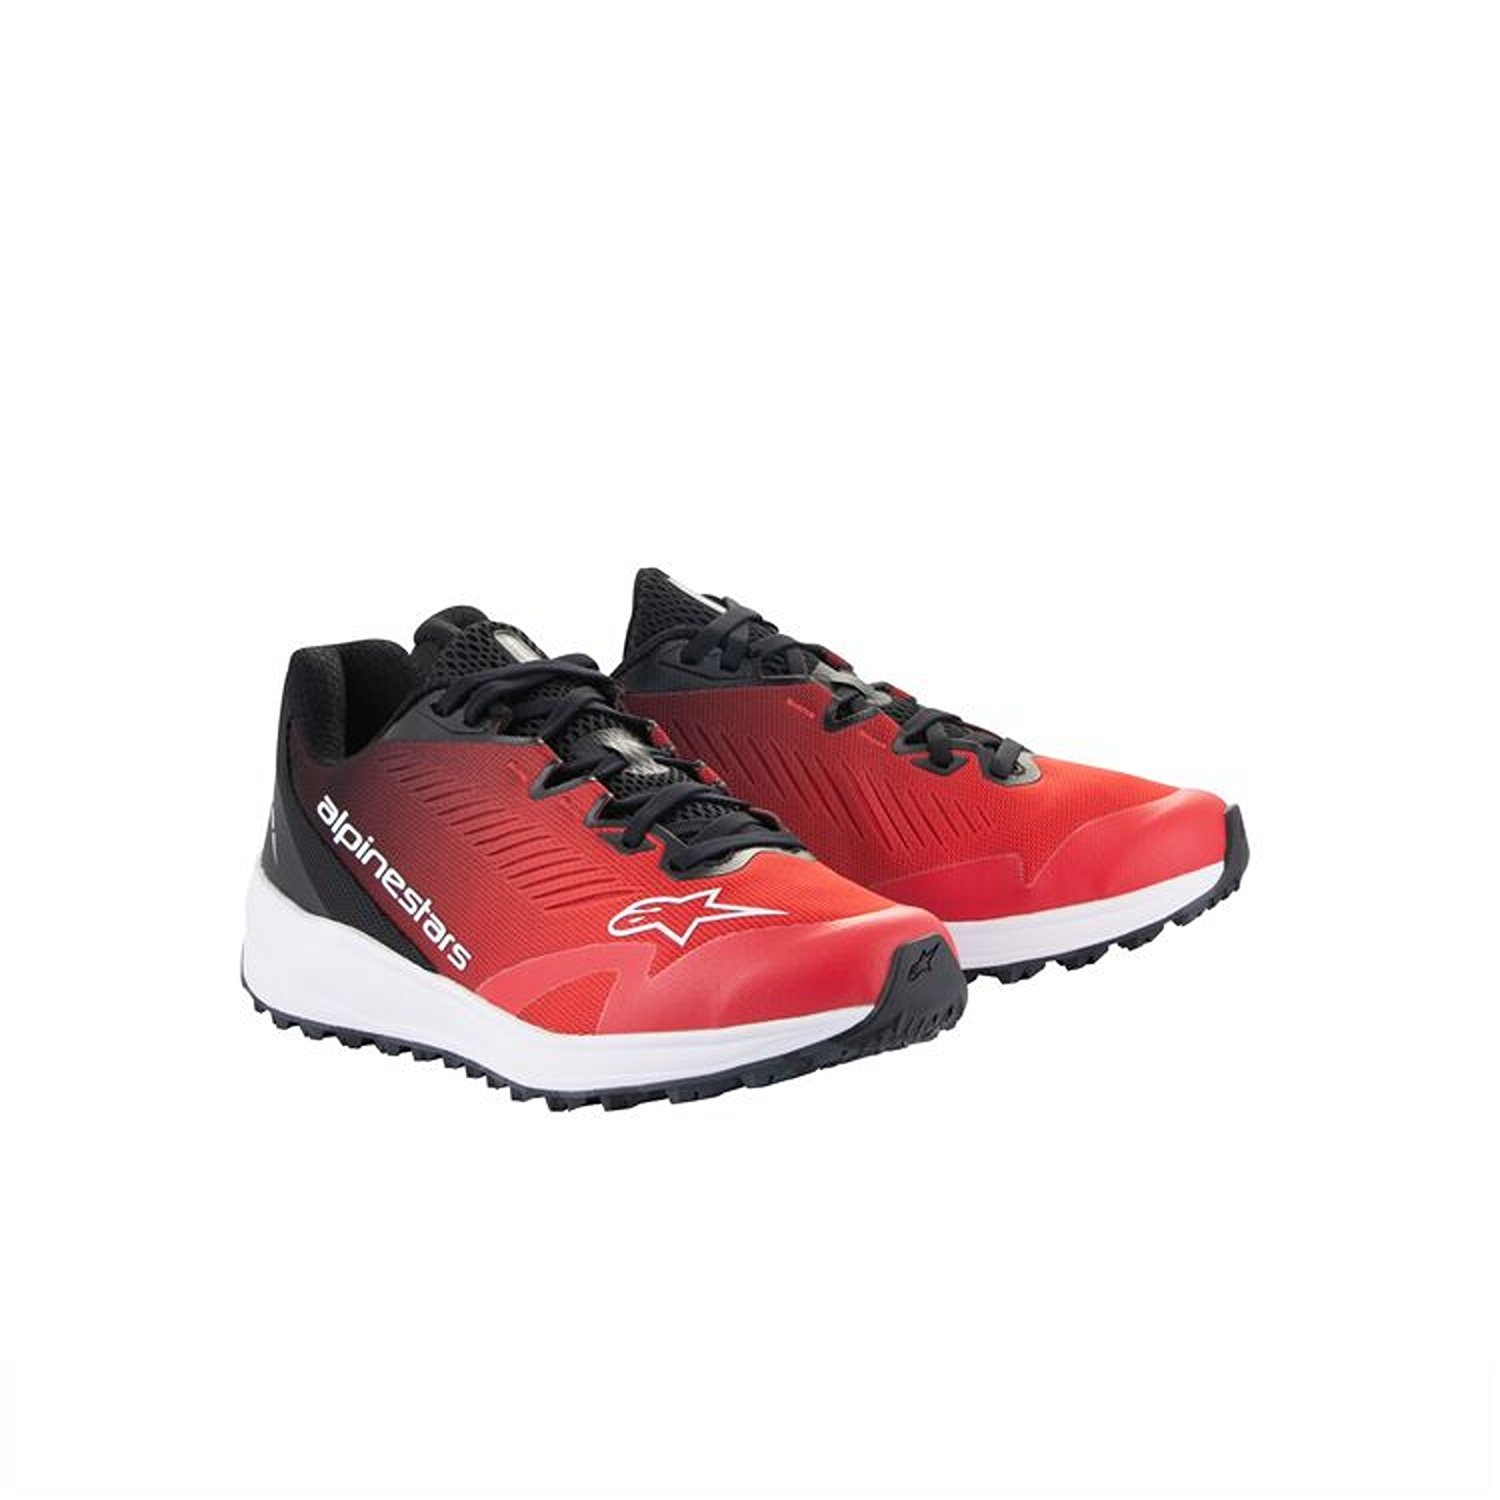 Image of Alpinestars Meta Road V2 Shoes Red Black White Größe US 65